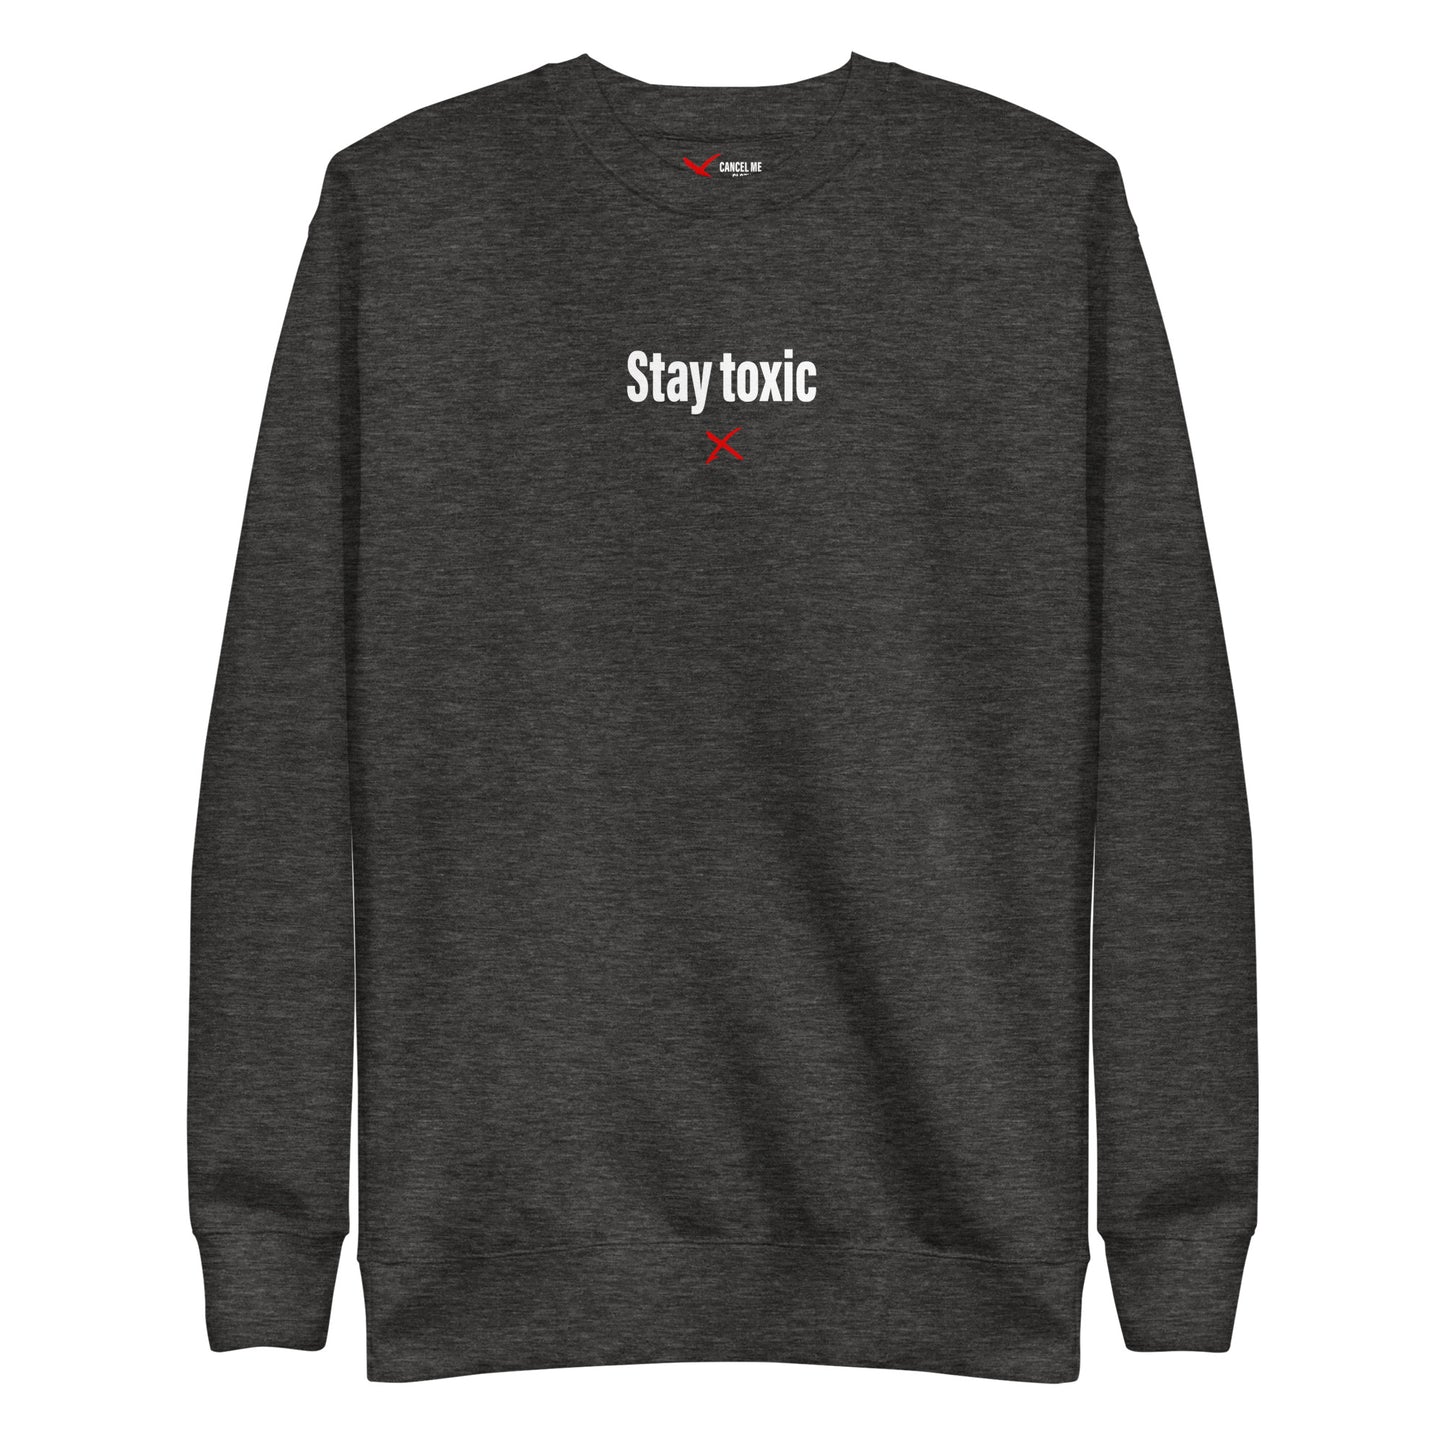 Stay toxic - Sweatshirt